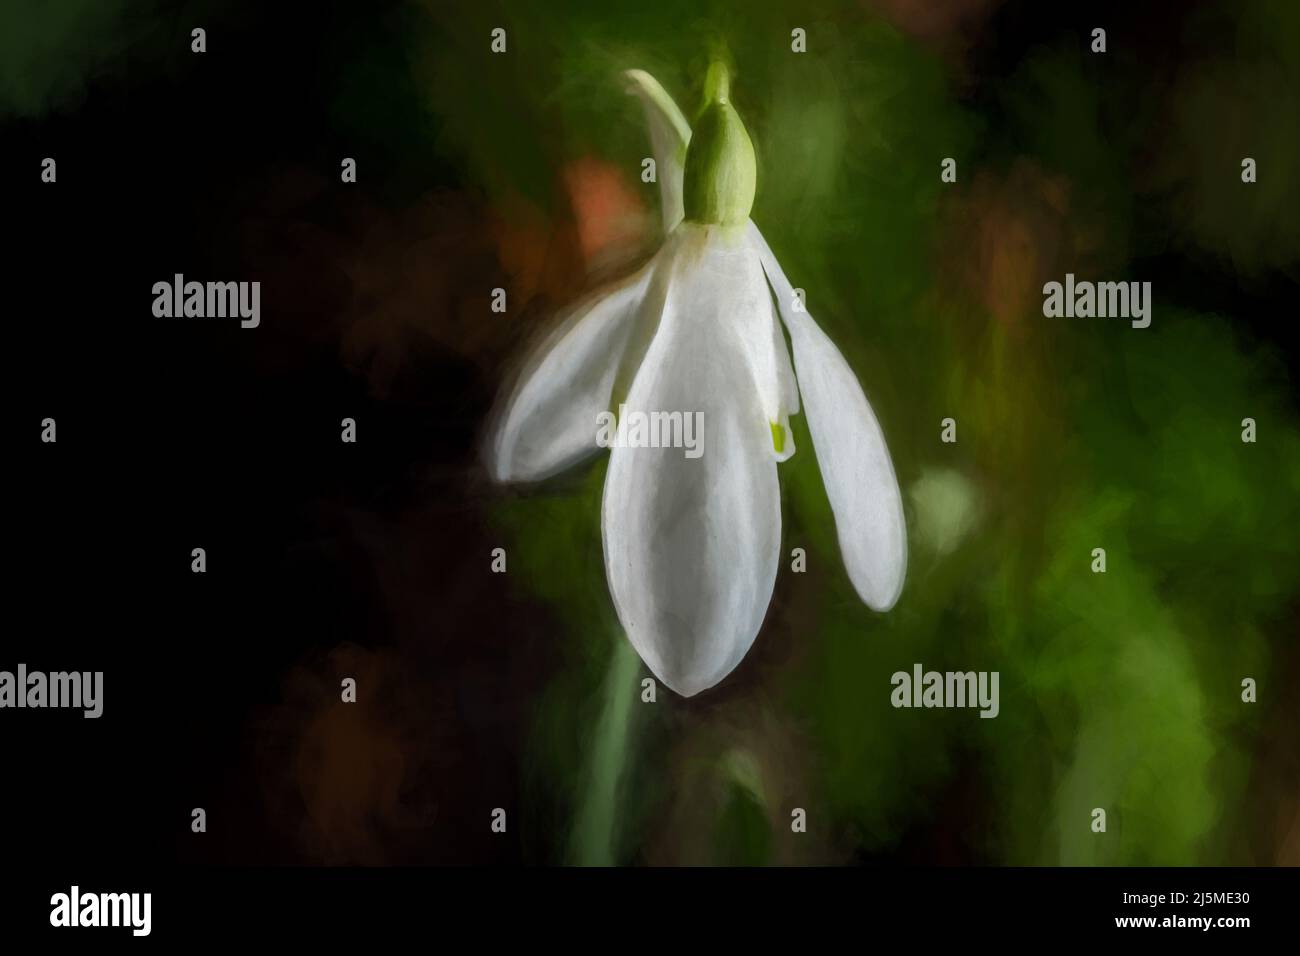 Peinture numérique abstraite à l'huile d'un Snowdrop herbacé vivace se réveillant dans un cadre boisé naturel. Banque D'Images